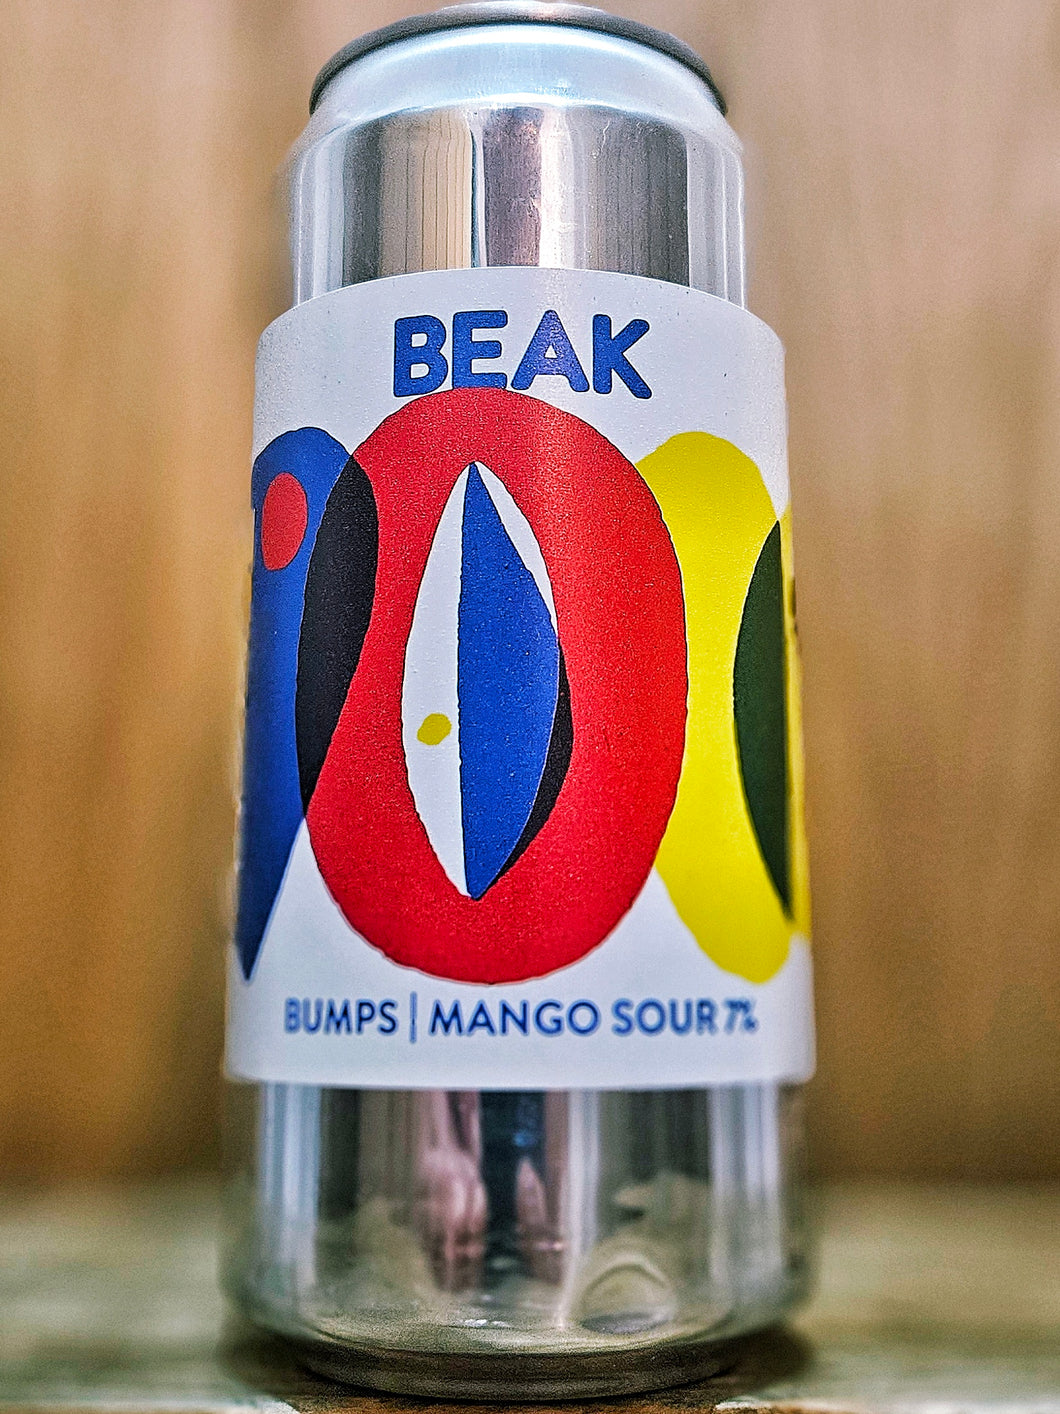 Beak Brewery - Bumps